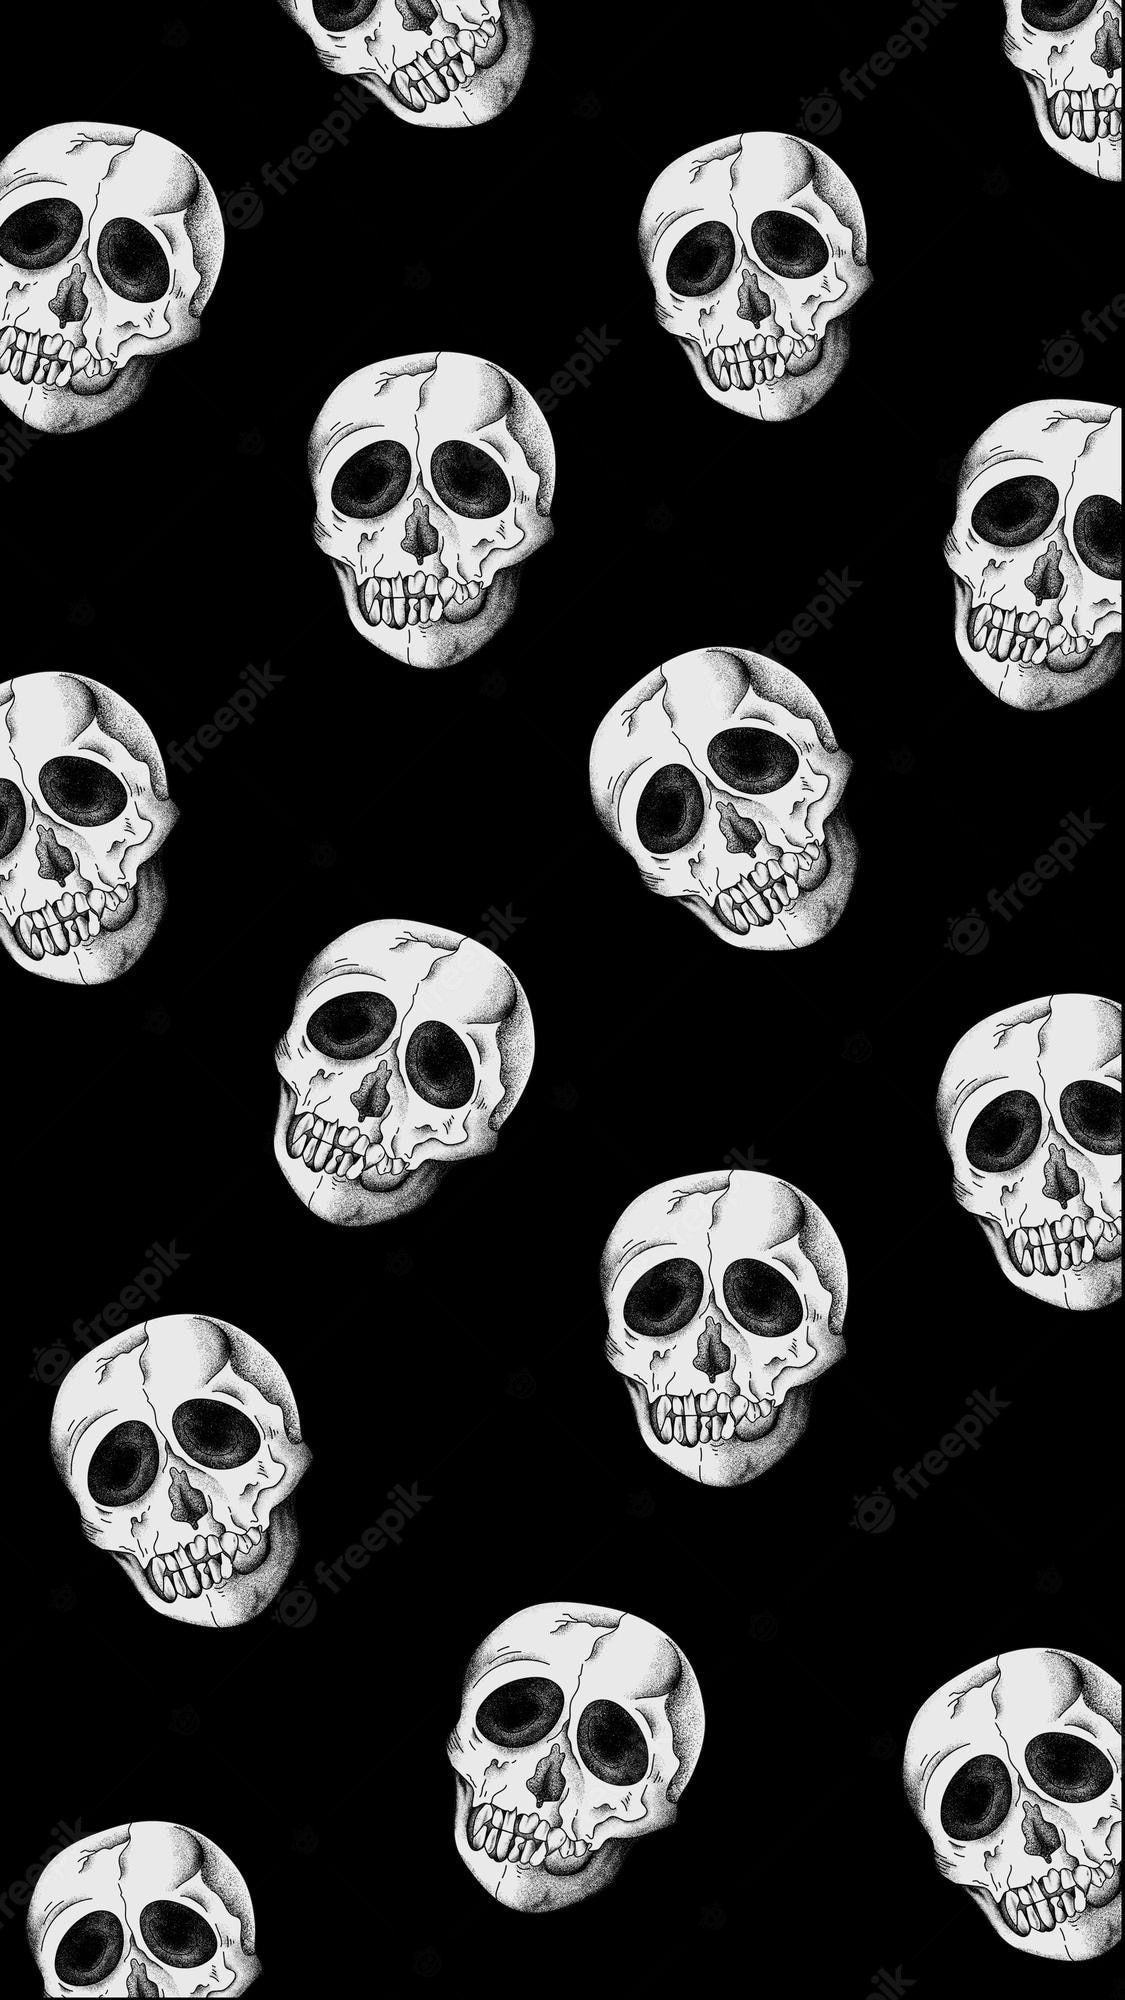 A black and white skull pattern - Skeleton, black phone, creepy, skull